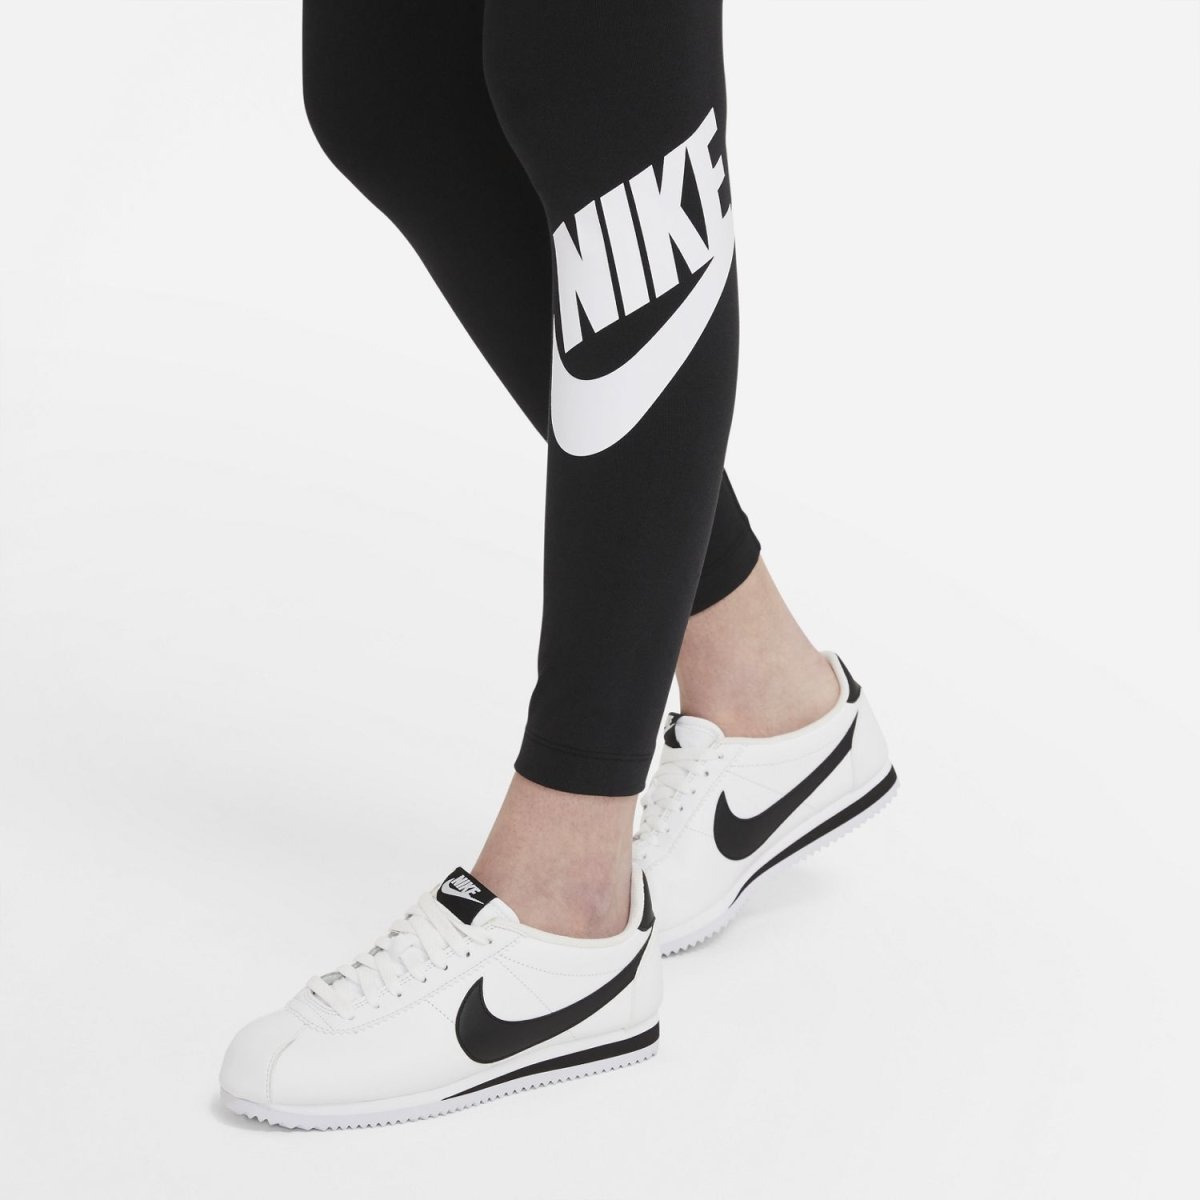 Nike Womens Sportswear Essential High-Waisted Leggings (CZ8528-010) –  STNDRD ATHLETIC CO.